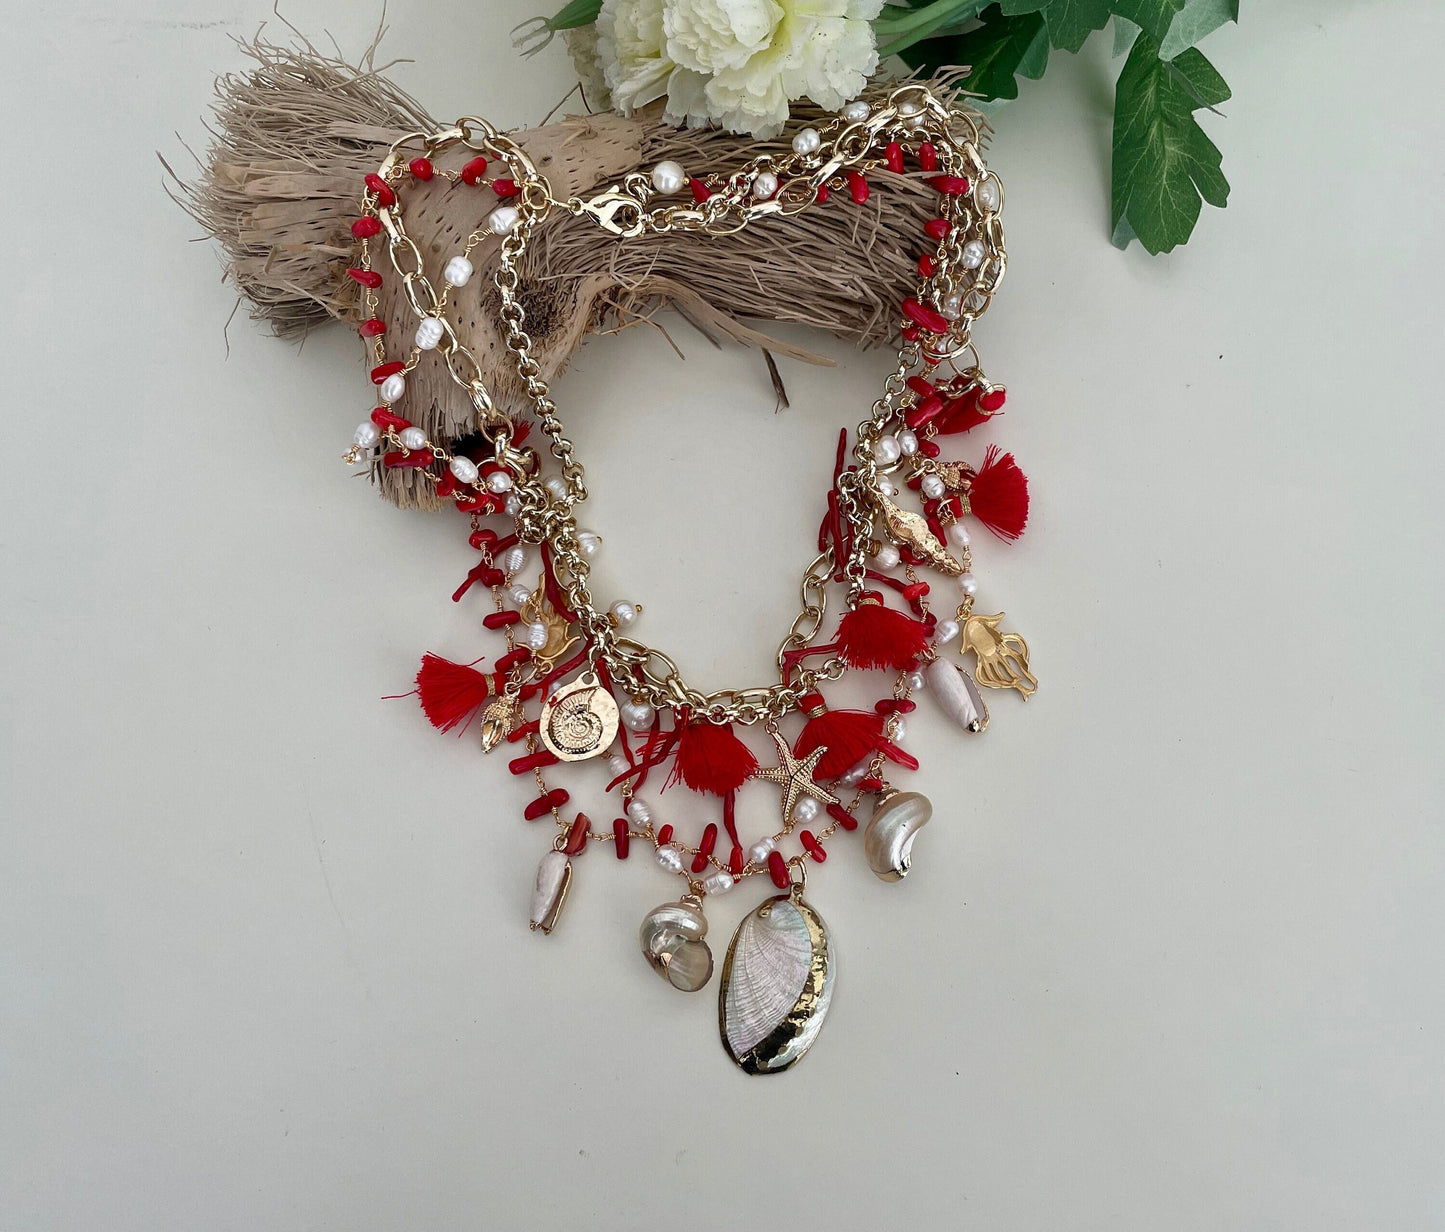 Collana con quattro fili misti, catena a maglia e catena rosario, corallo, conchiglie e nappe. colore rosso.=